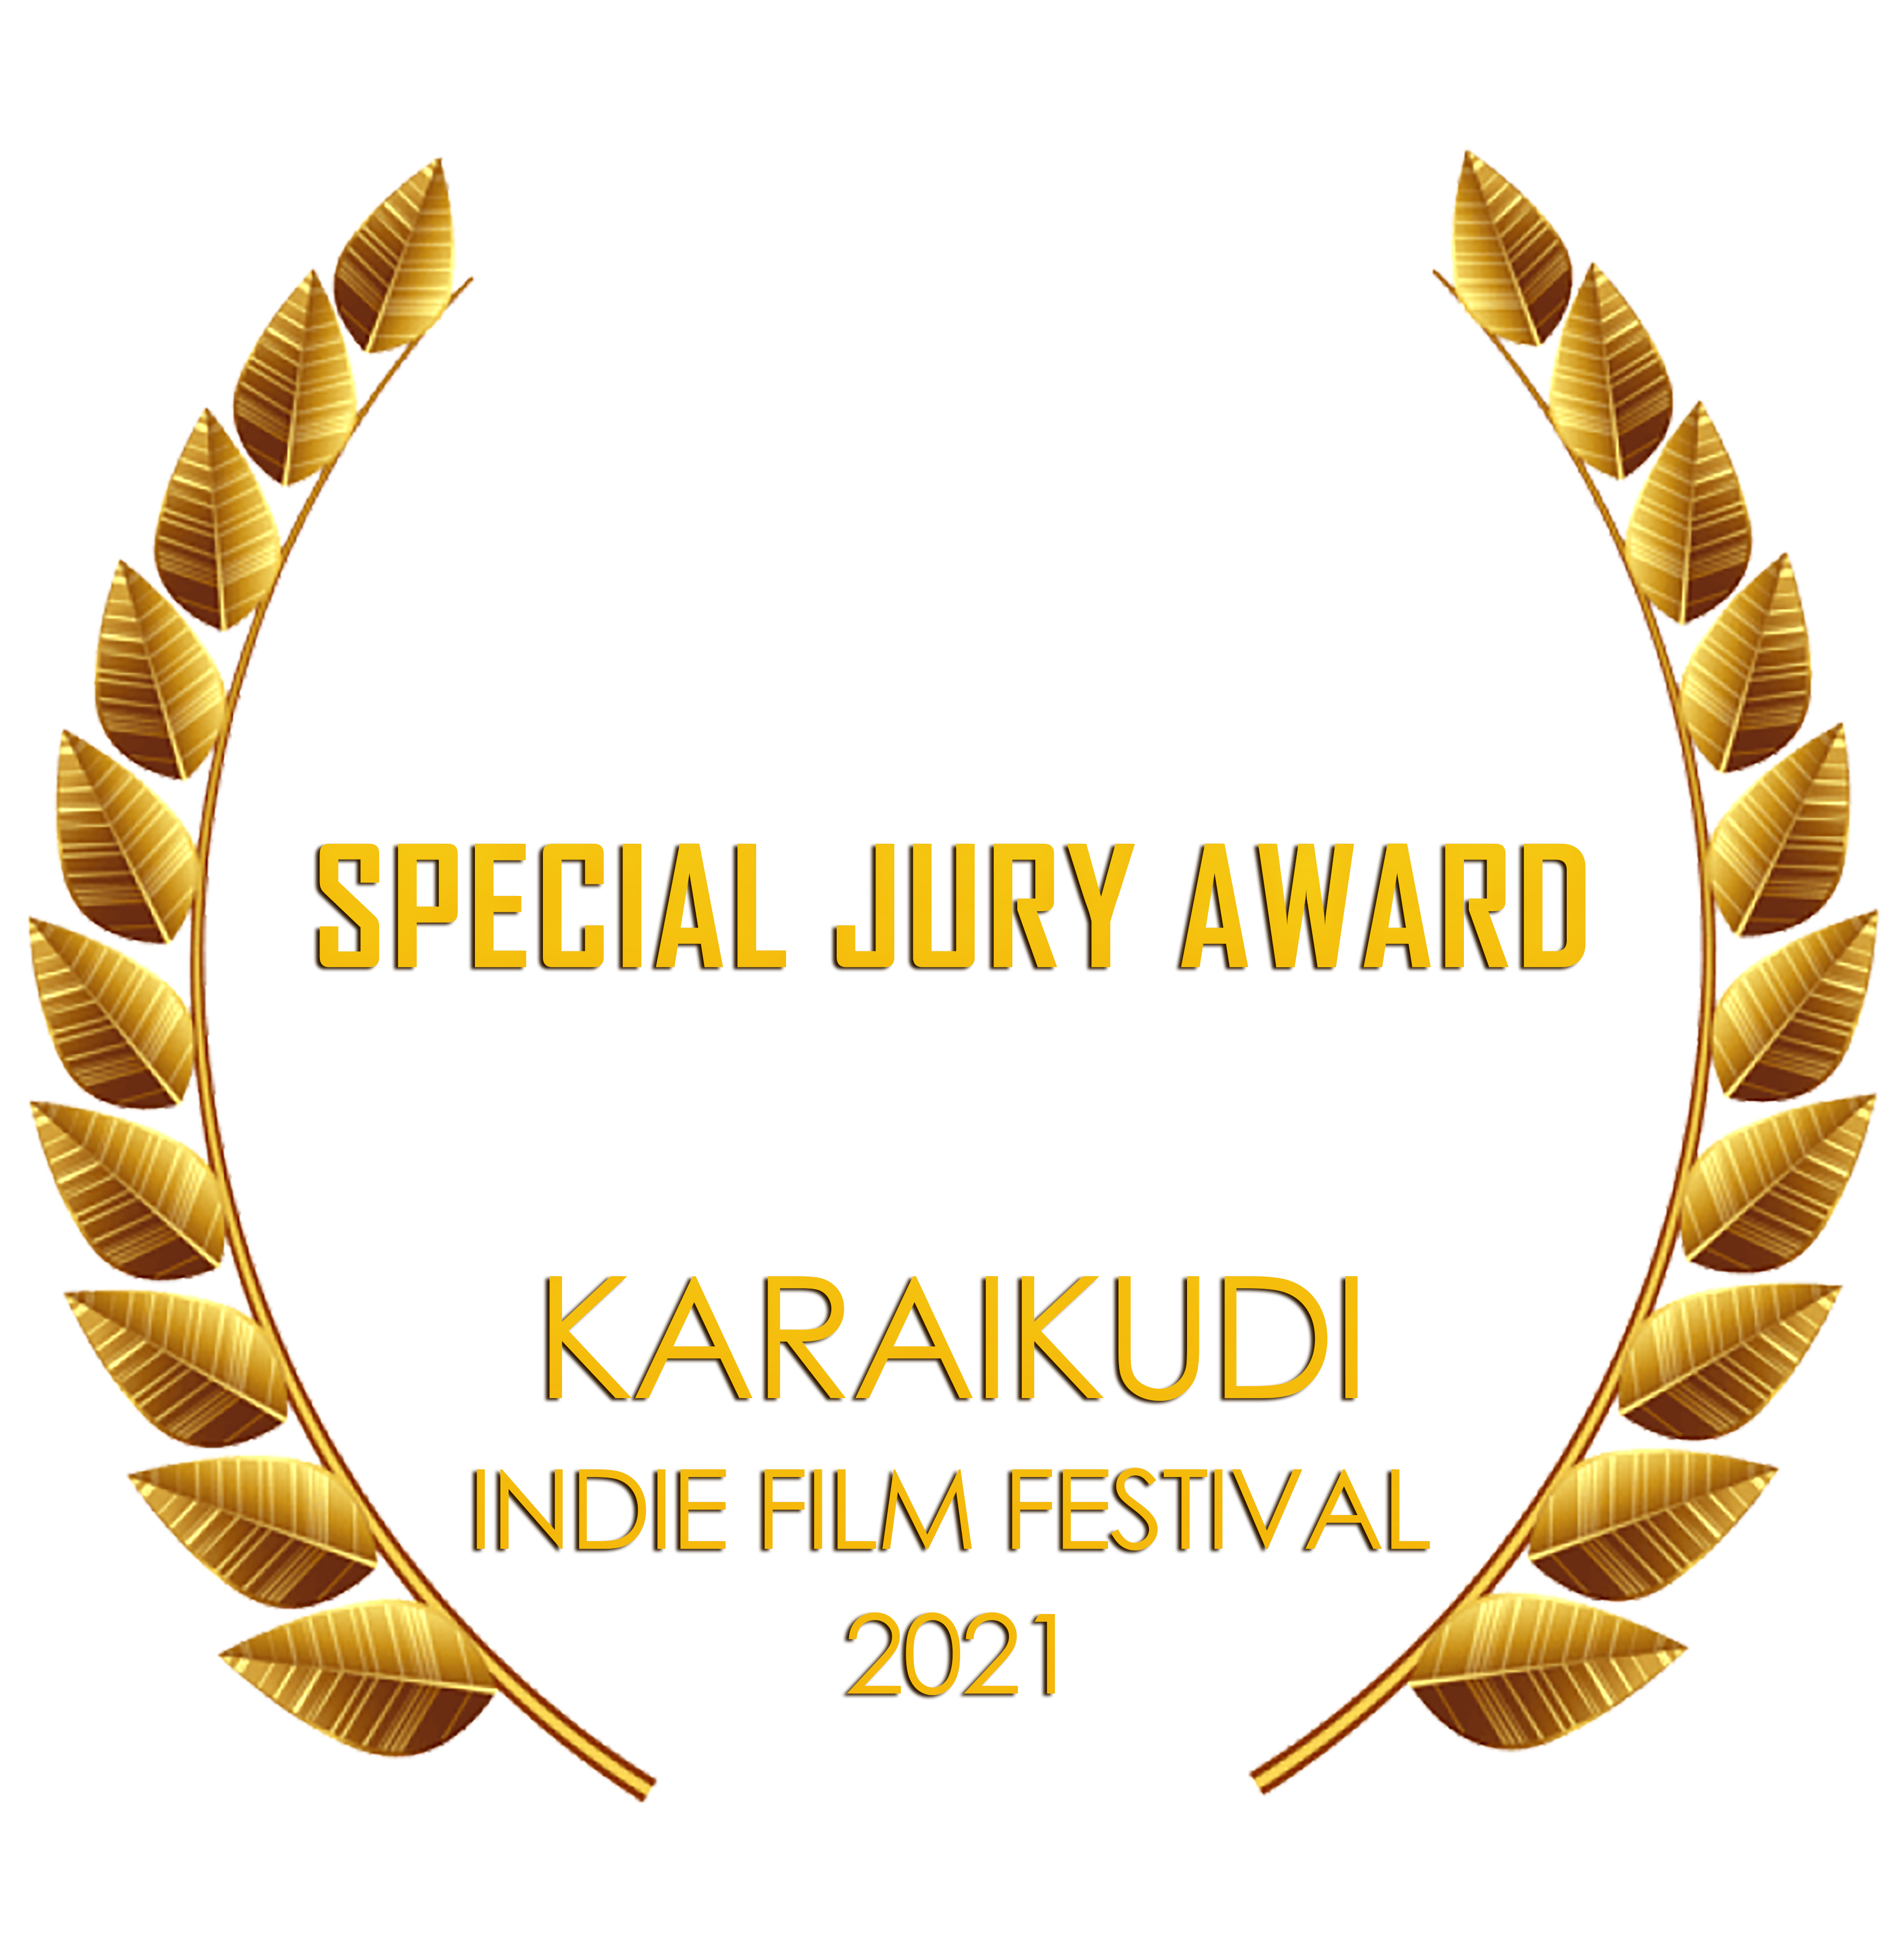 Winner Karaikudi Indie  Film Festival Best Documentary Short Film 2021